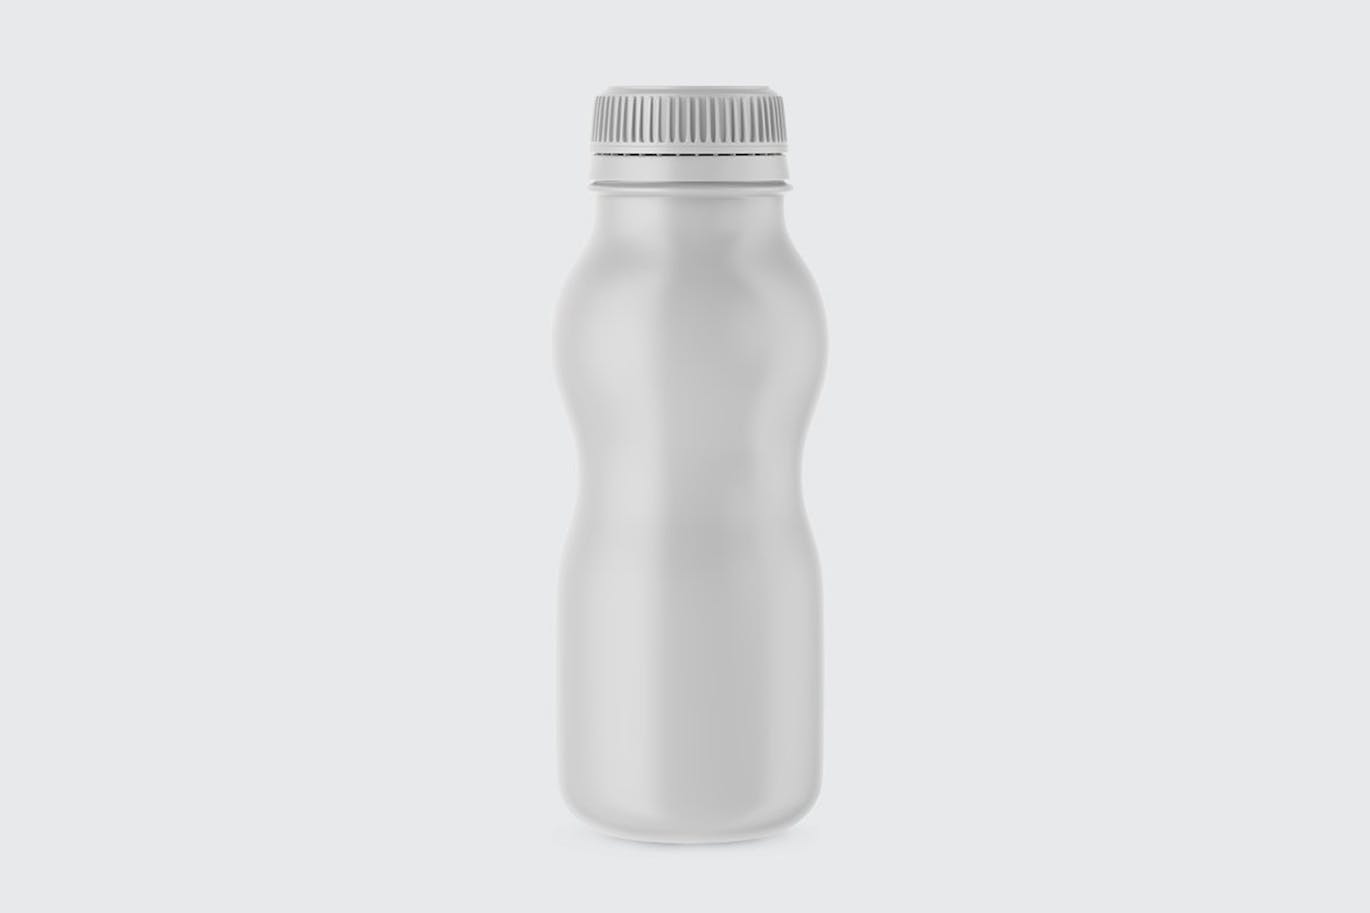 哑光酸奶瓶包装设计样机 Matte Yogurt Bottle Mockup 样机素材 第4张